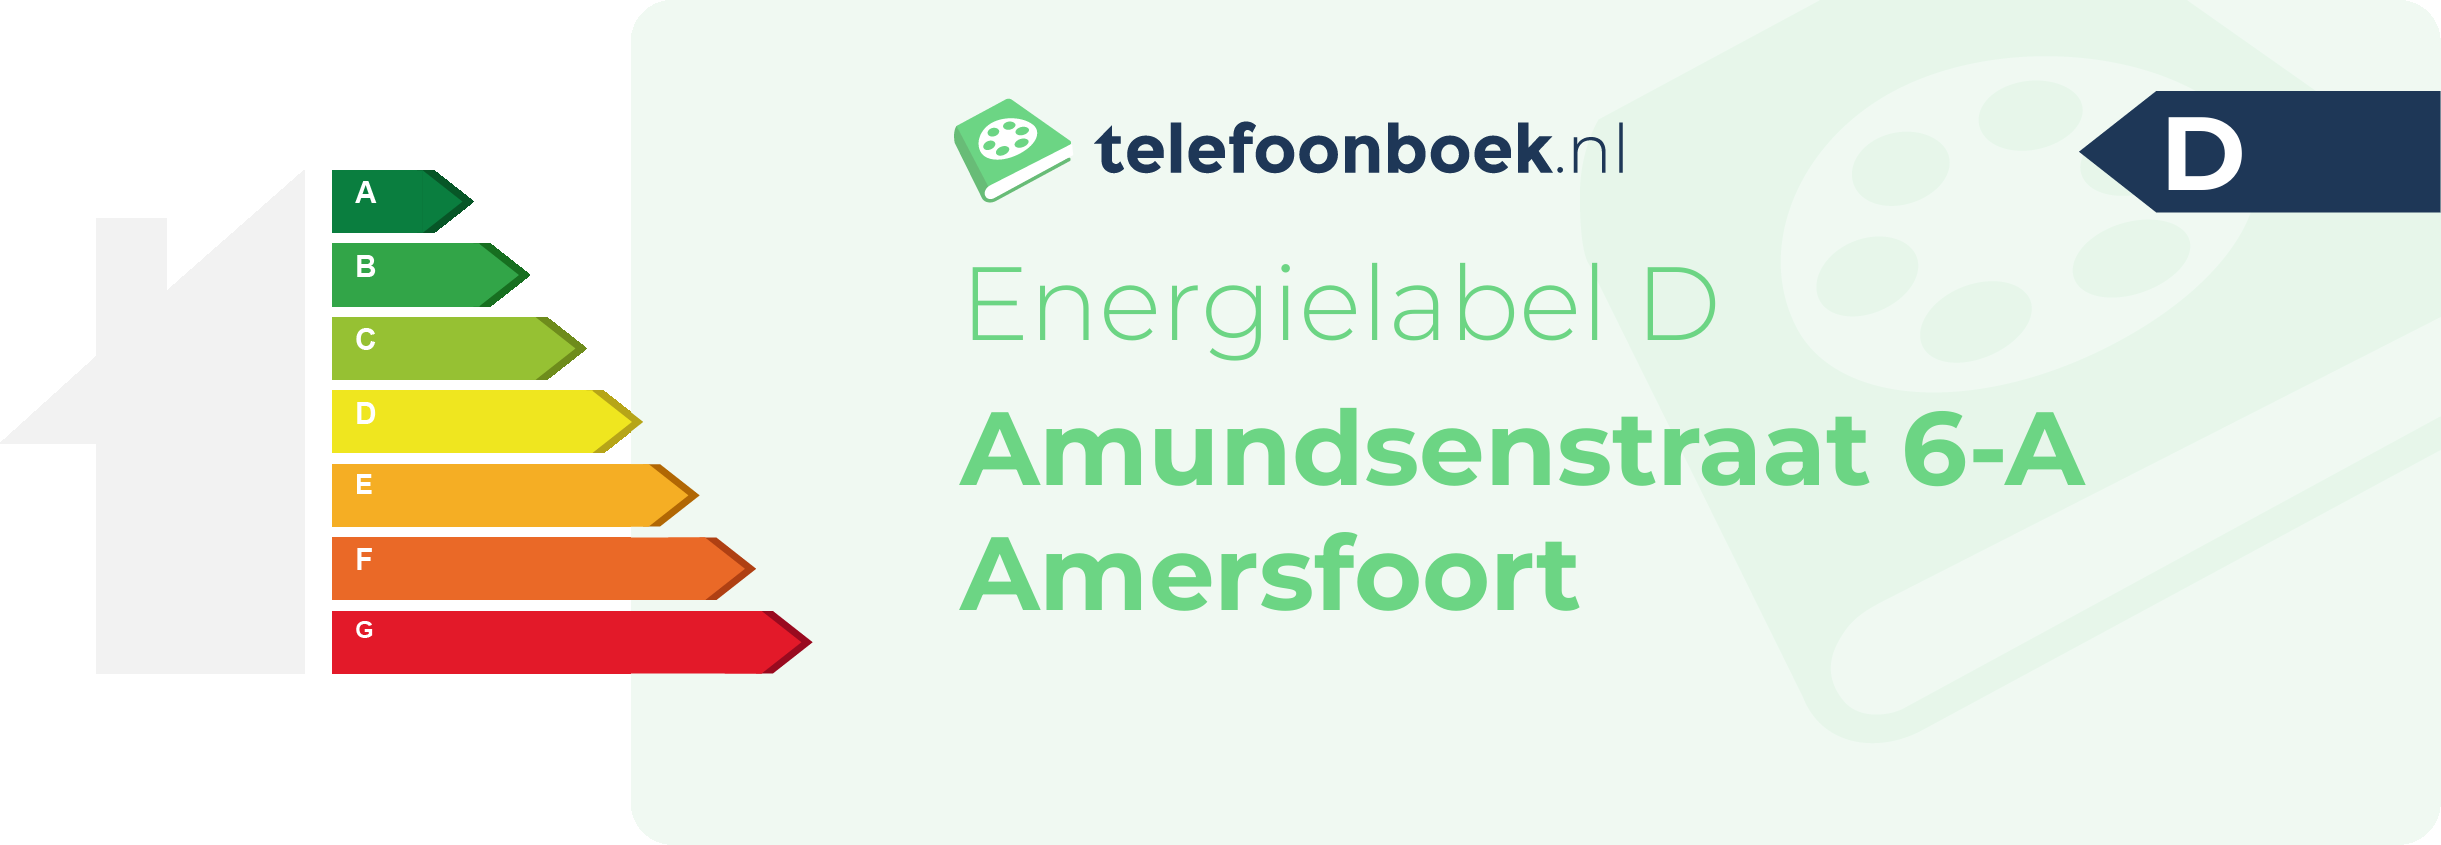 Energielabel Amundsenstraat 6-A Amersfoort